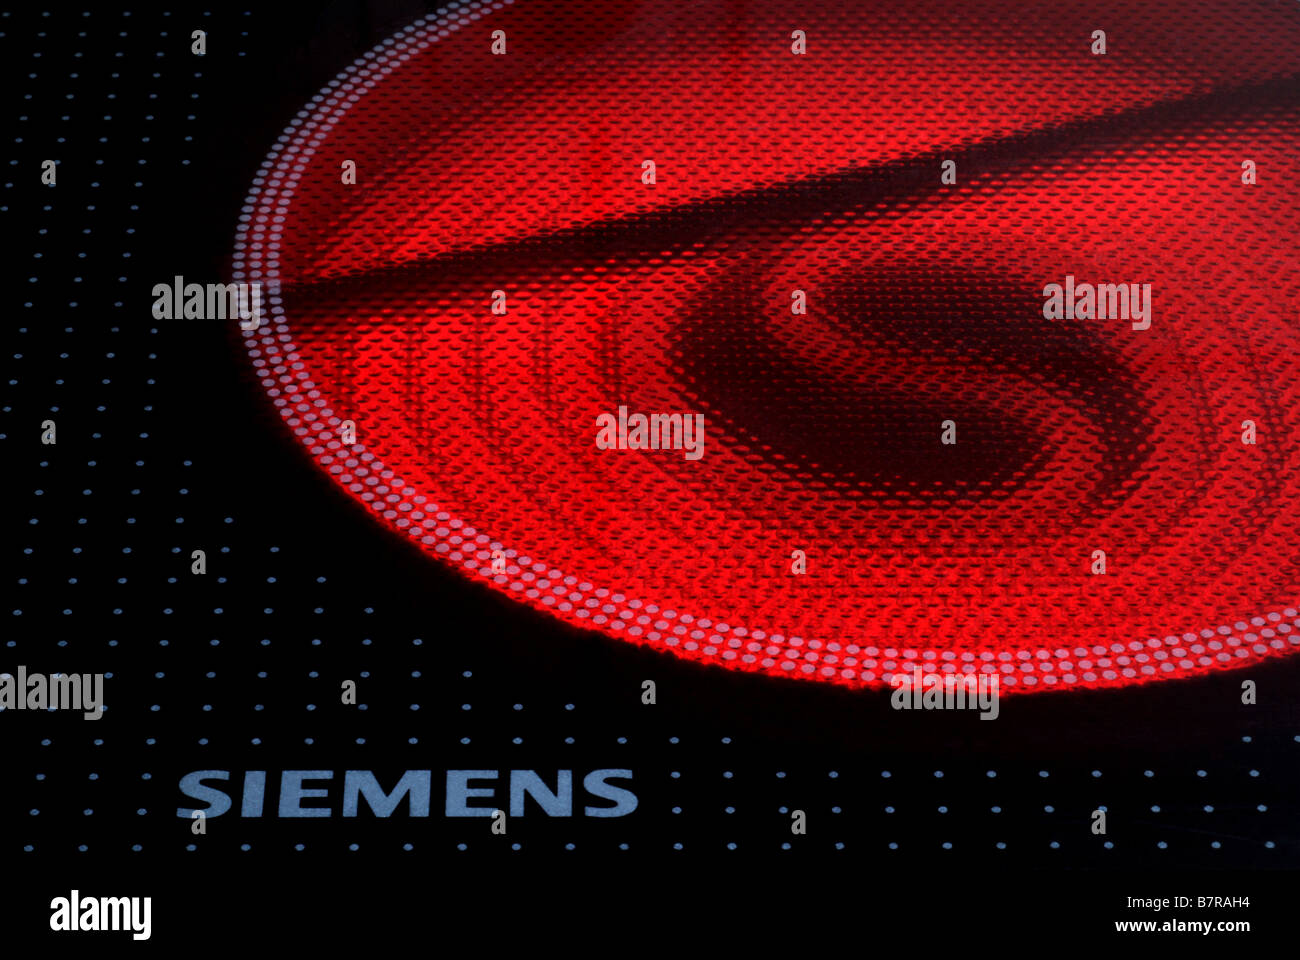 Inländischen elektrischen Herd Kochfeld Siemens Stockfoto